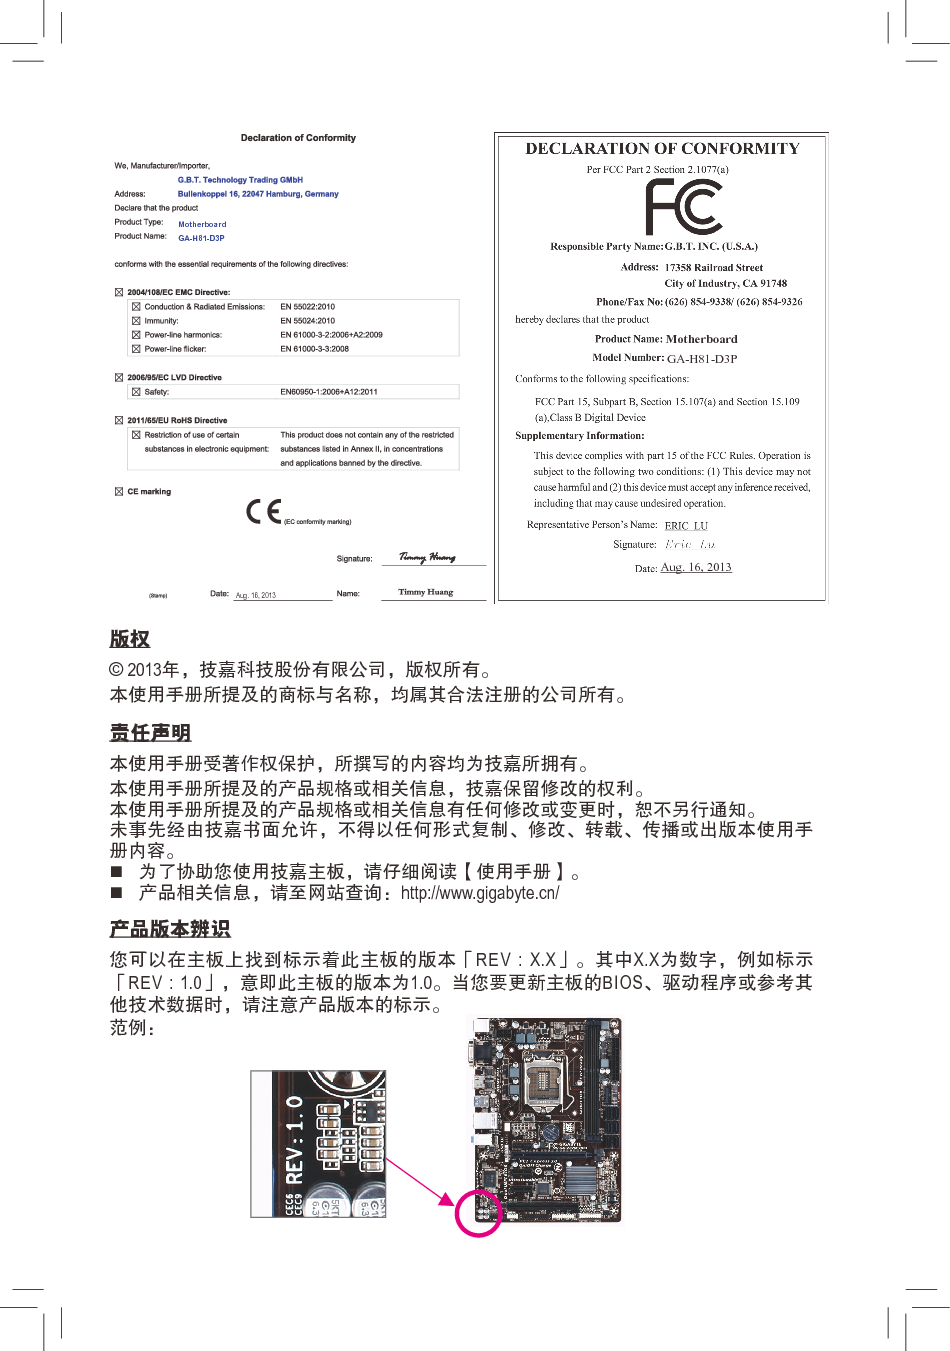 技嘉 Gigabyte GA-H81-D3P 使用手册 第1页